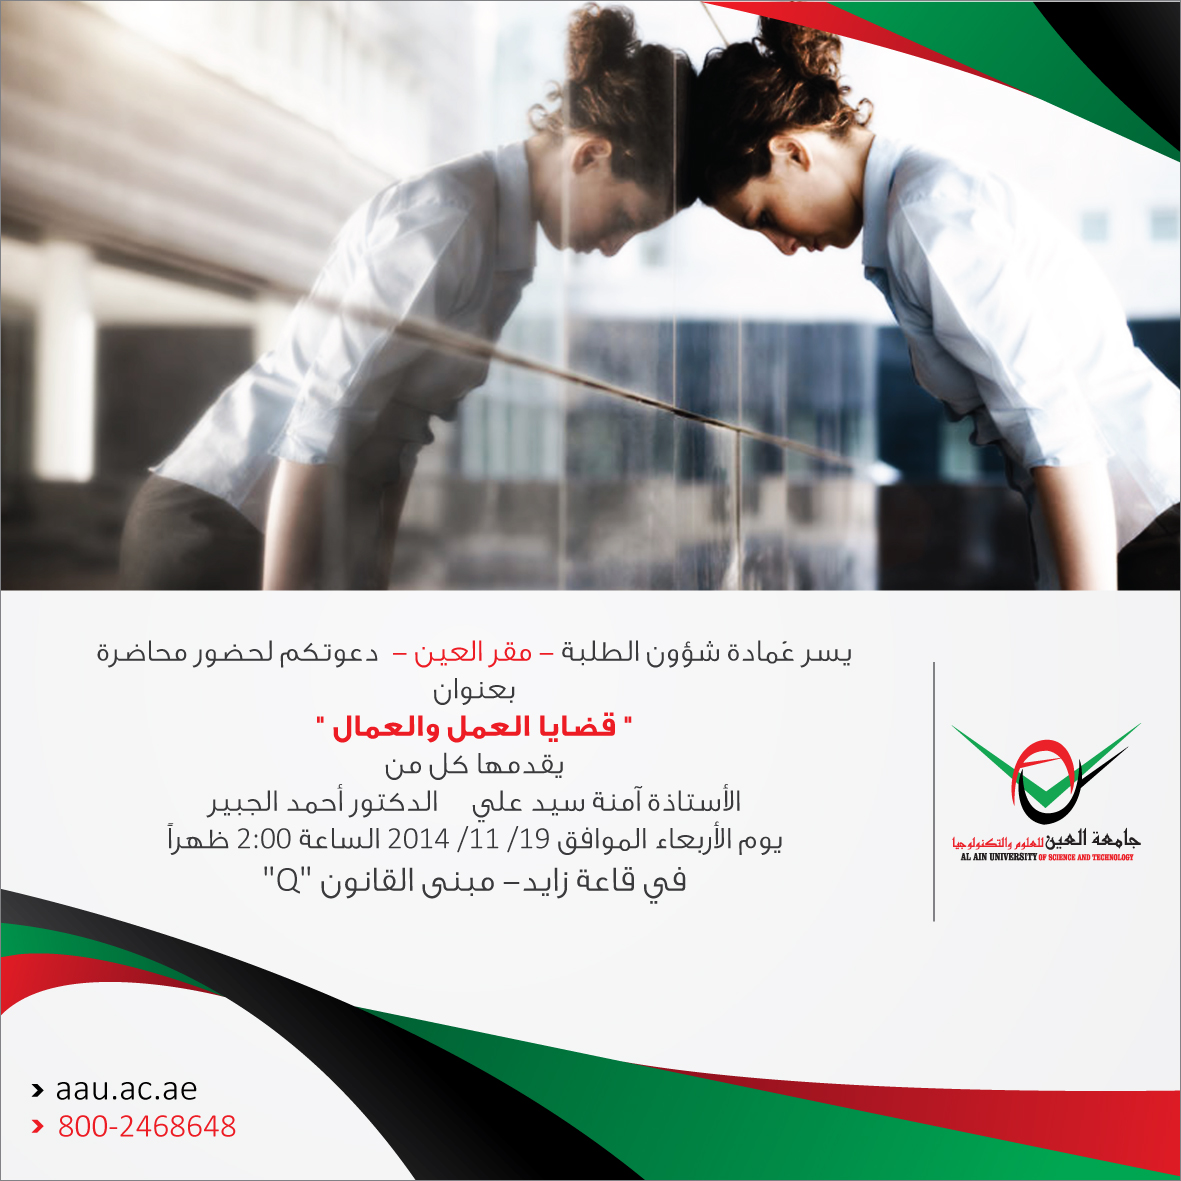 محاضرة بعنوان "قضايا العمل والعمال" مقر العين - جامعة العين